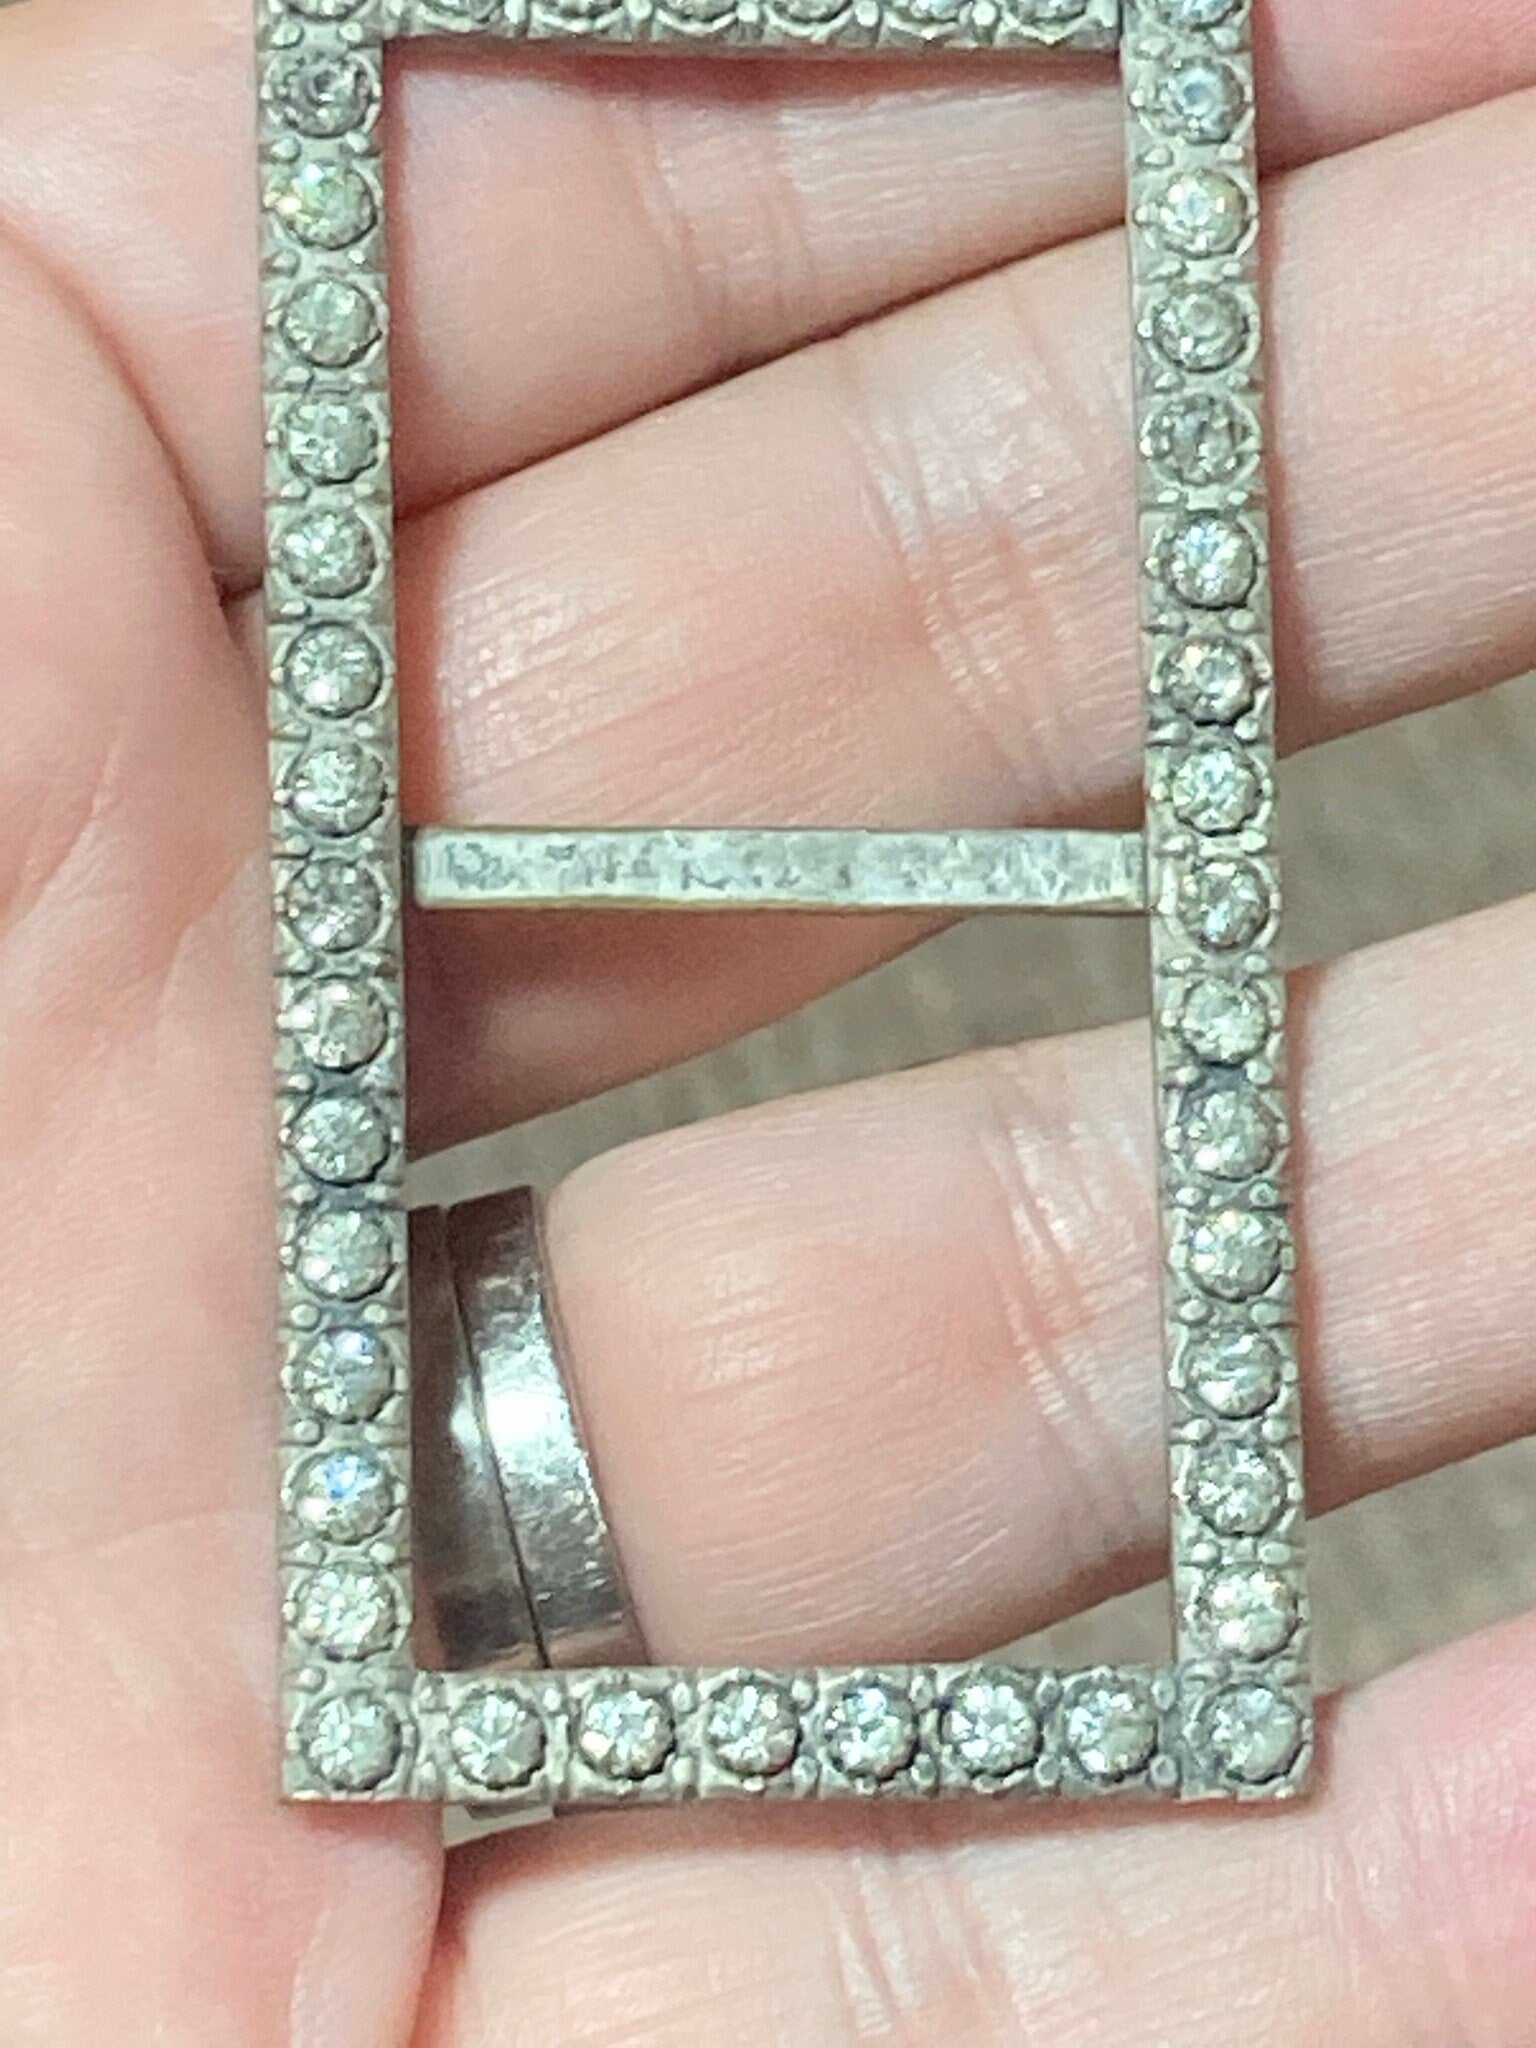 Antique 6cm rectangle Claw Set Clear Glass Diamante Belt Buckle